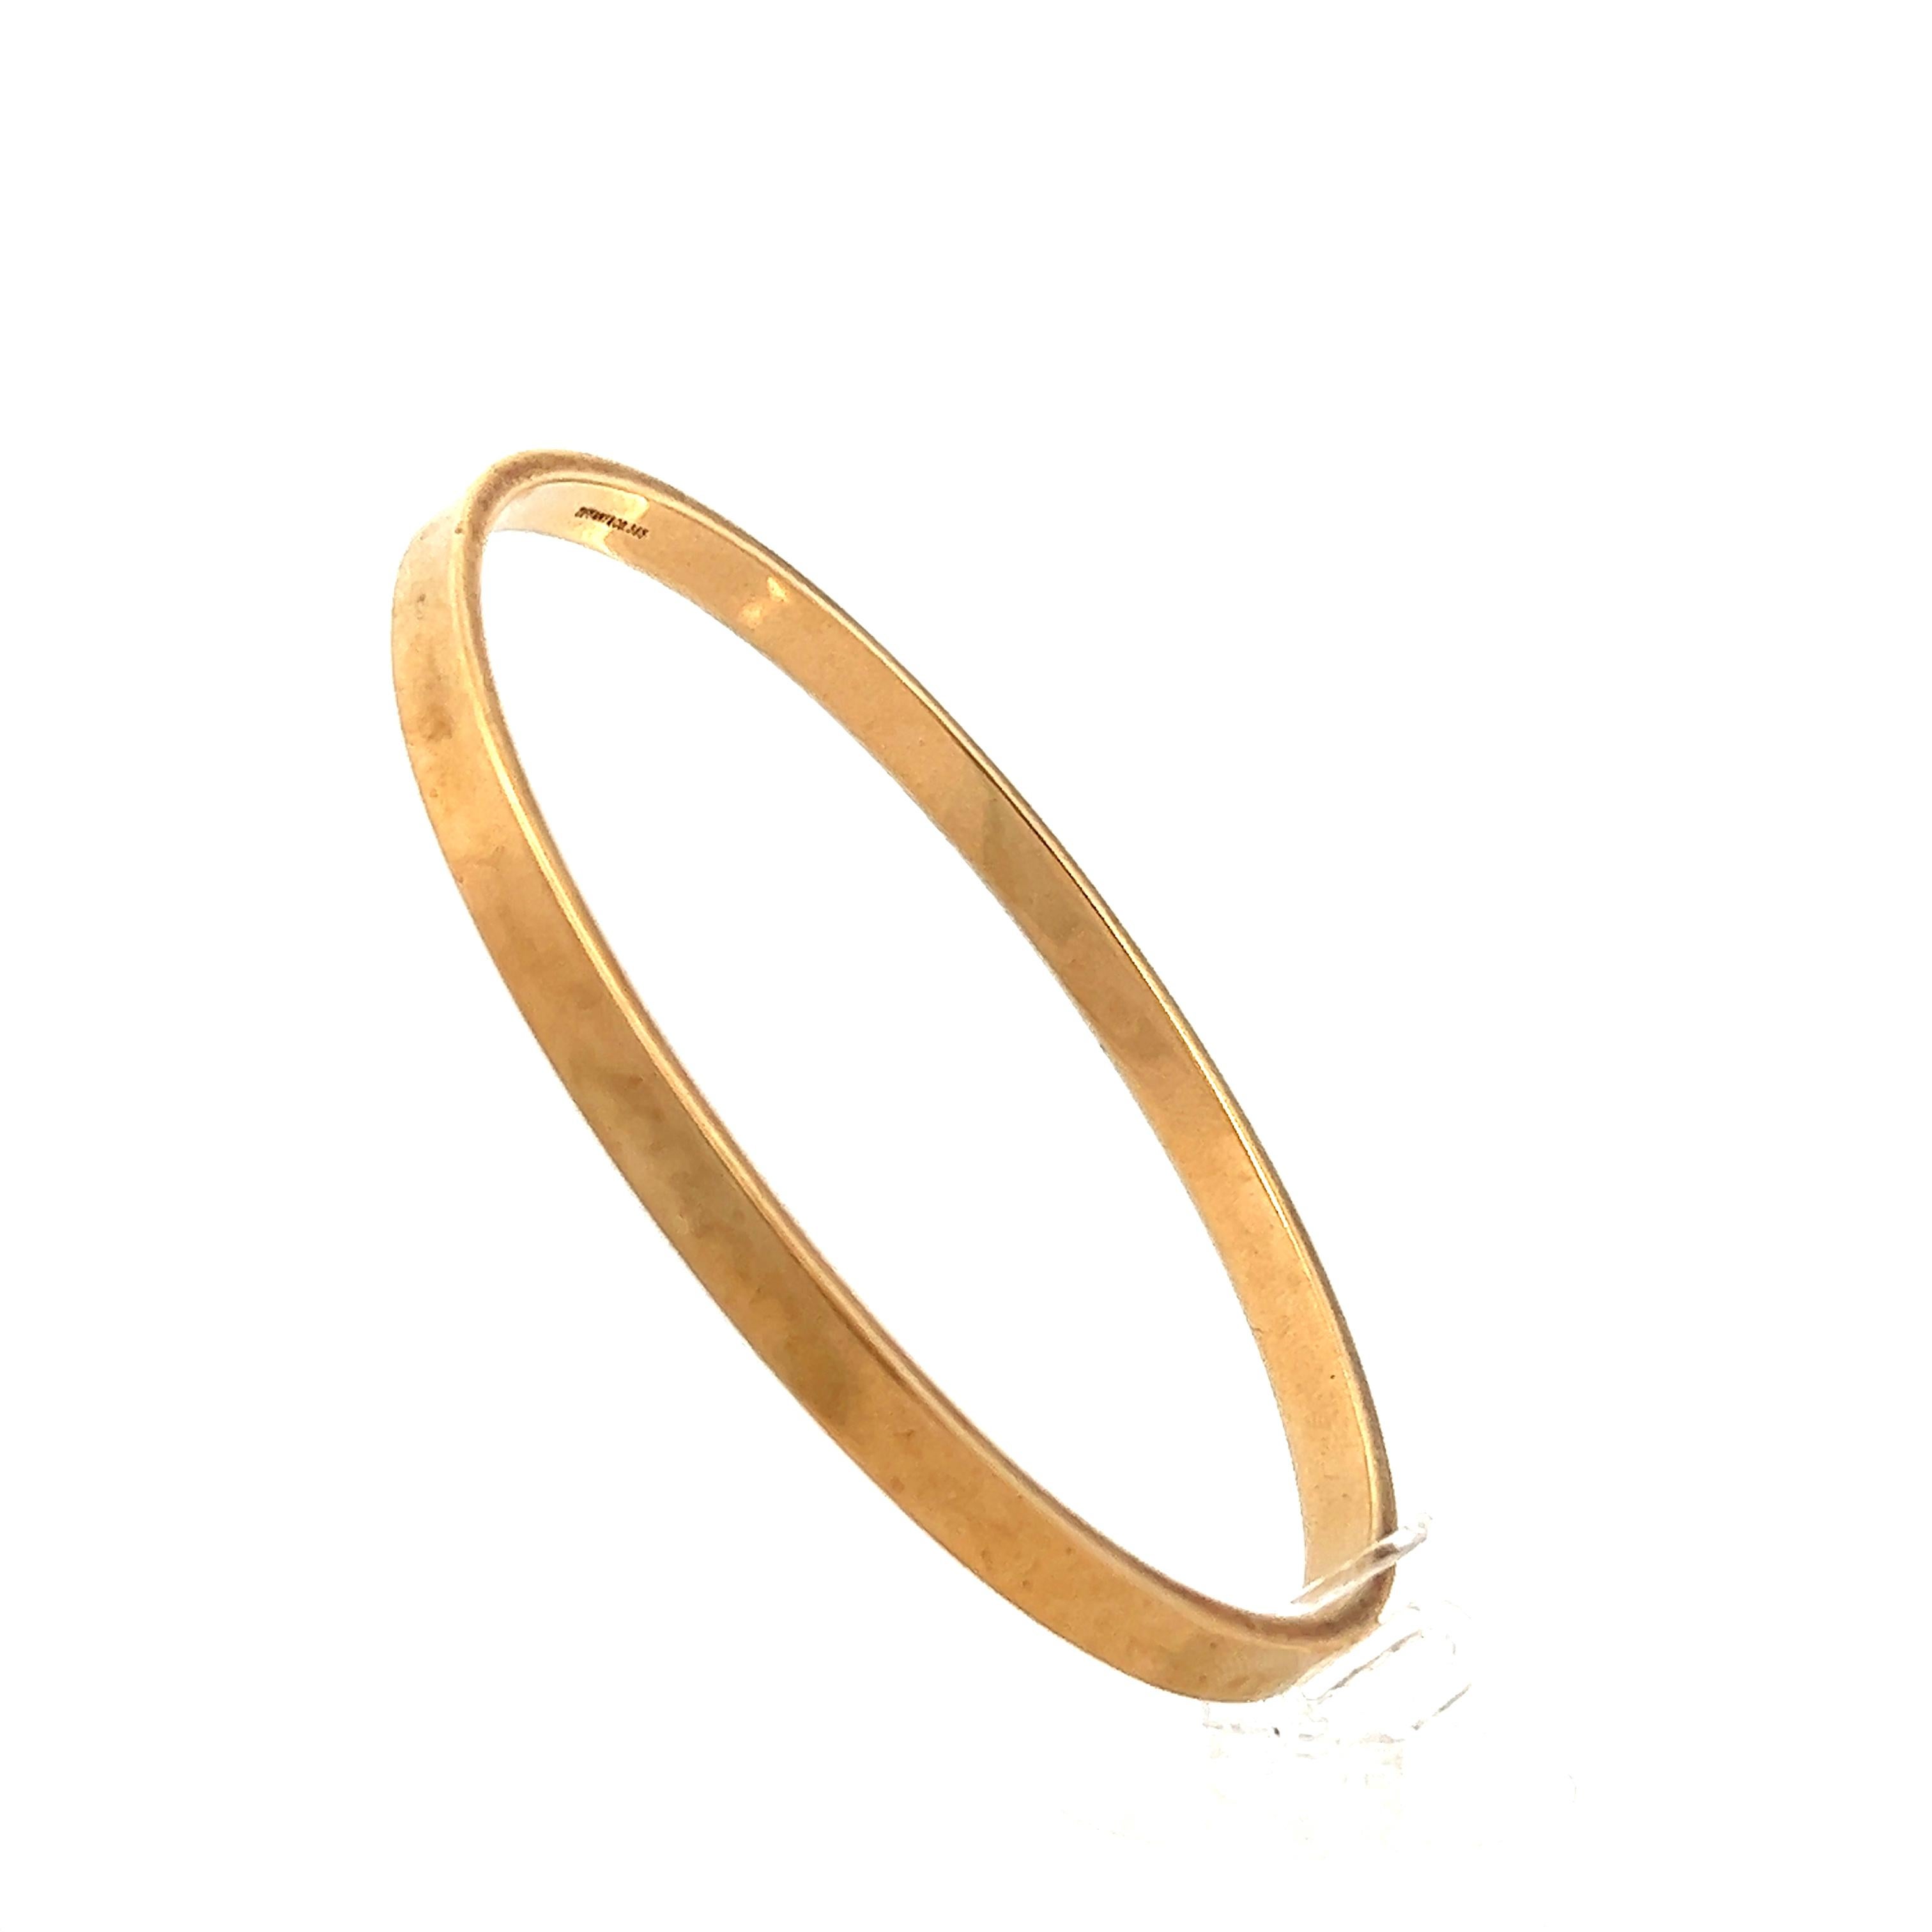 Diese Vintage Tiffany & Co. 14 Karat Gelbgold Armreif Armband ist in wunderschön detaillierte 14K poliertem Gelbgold gefertigt. Das Armband hat ein traditionelles Design zum Anstecken und kommt ohne Verschlüsse aus. Die Innenseite des Armbands trägt